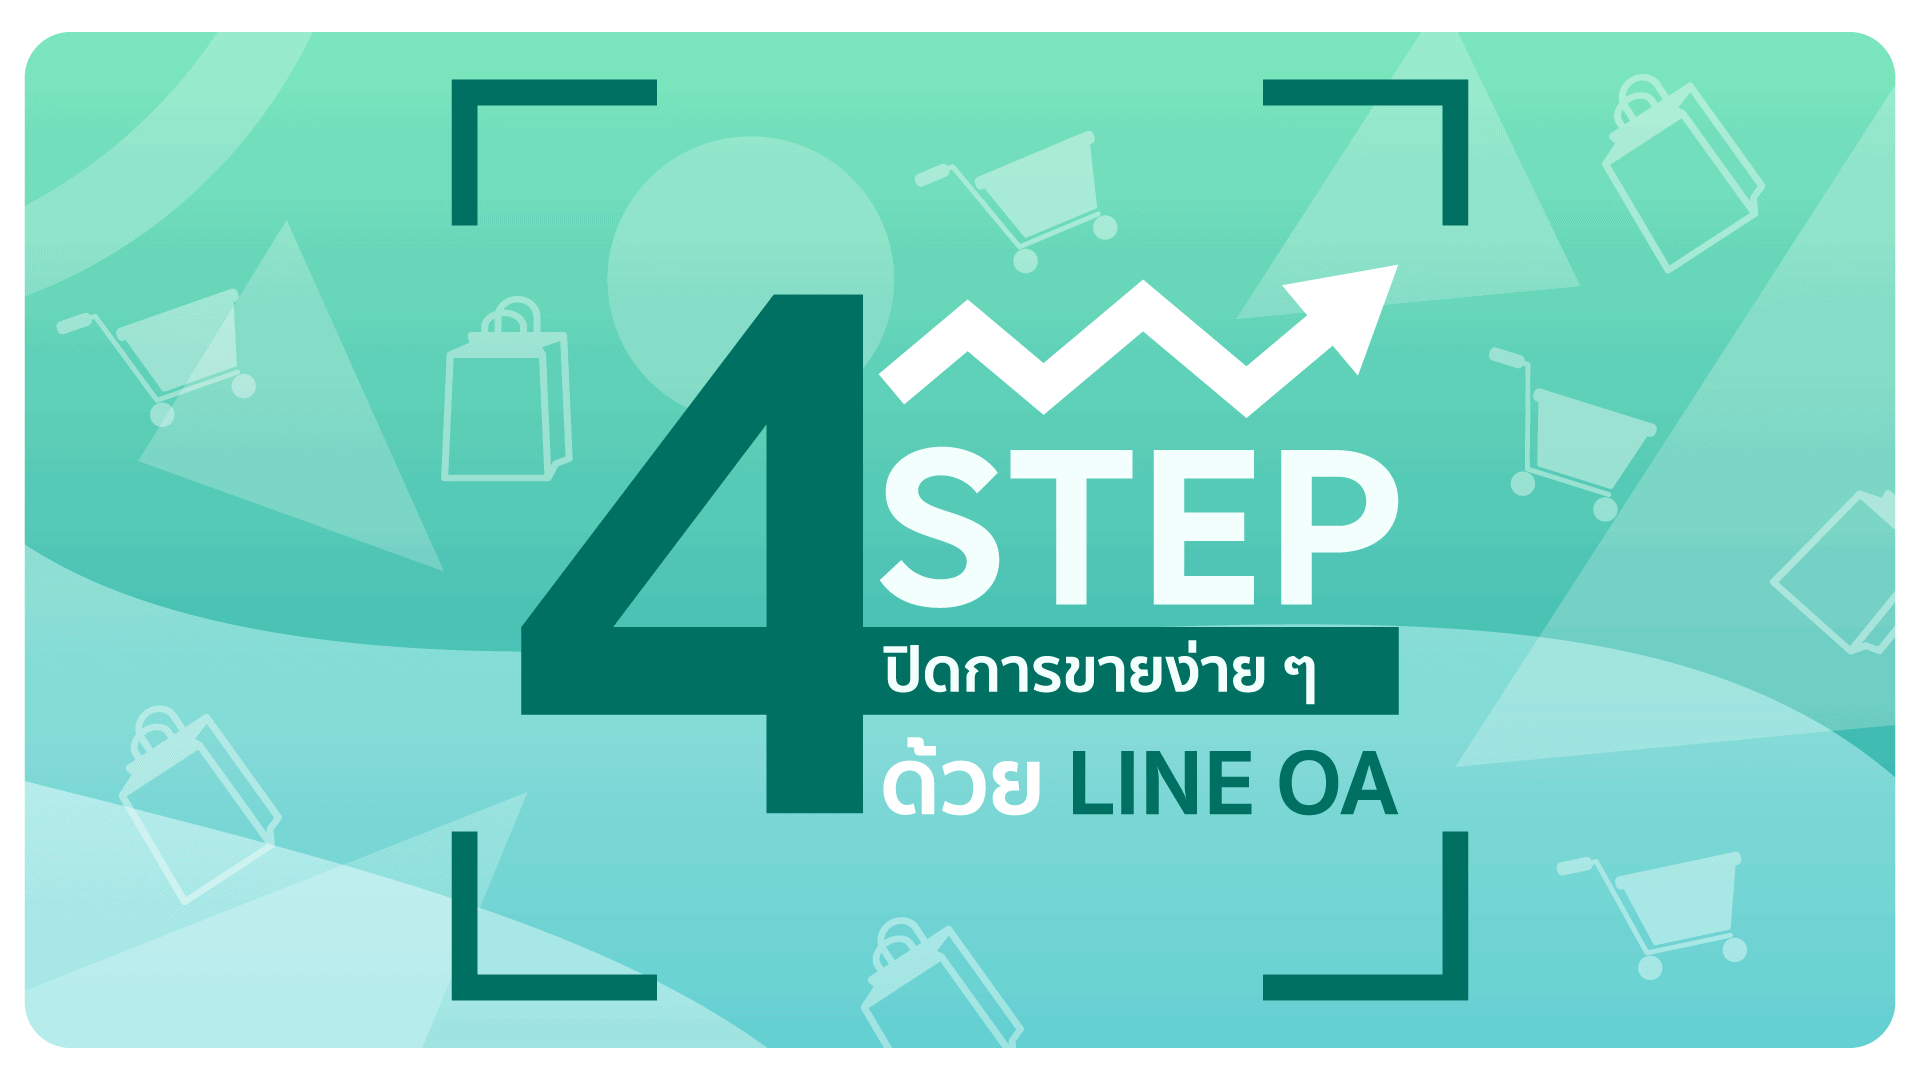 4 Step ปิดการขายง่าย ๆ ด้วย LINE OA 